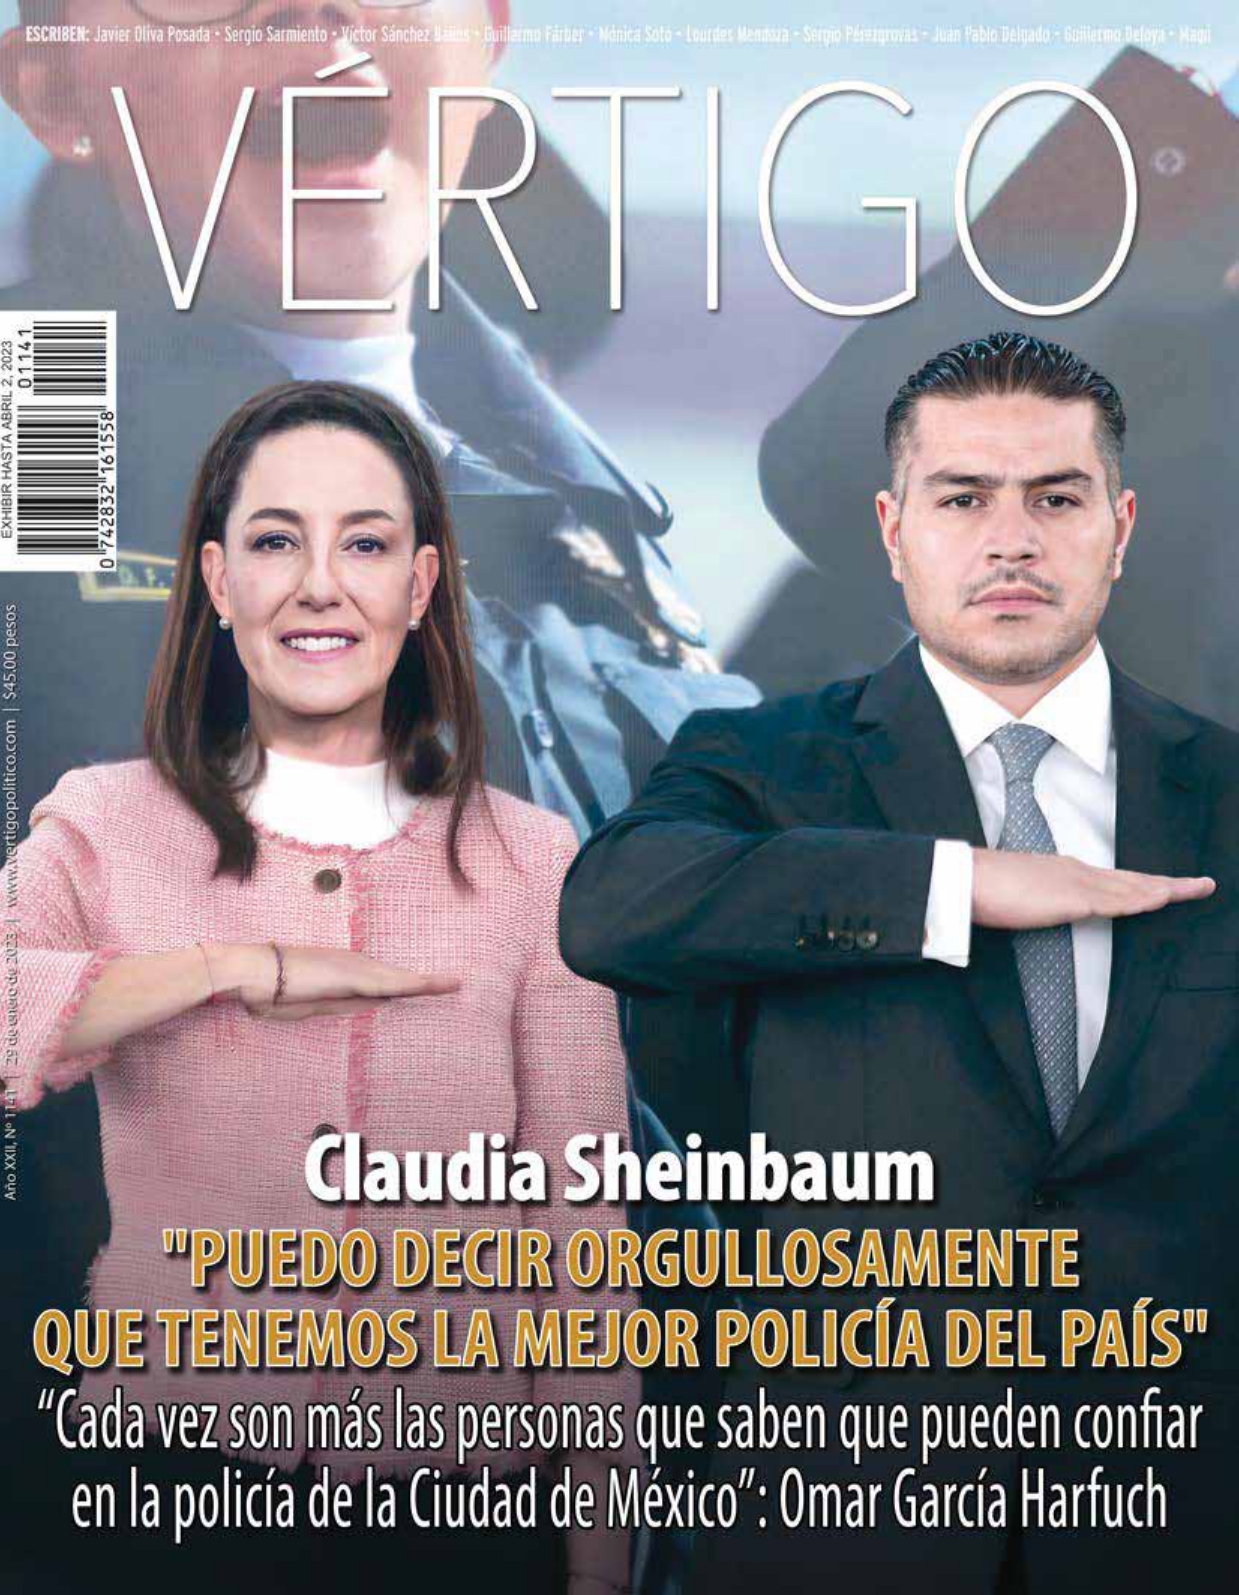 Promocionan a Sheinbaum como superpolicía en revista de Salinas Pliego portada 2